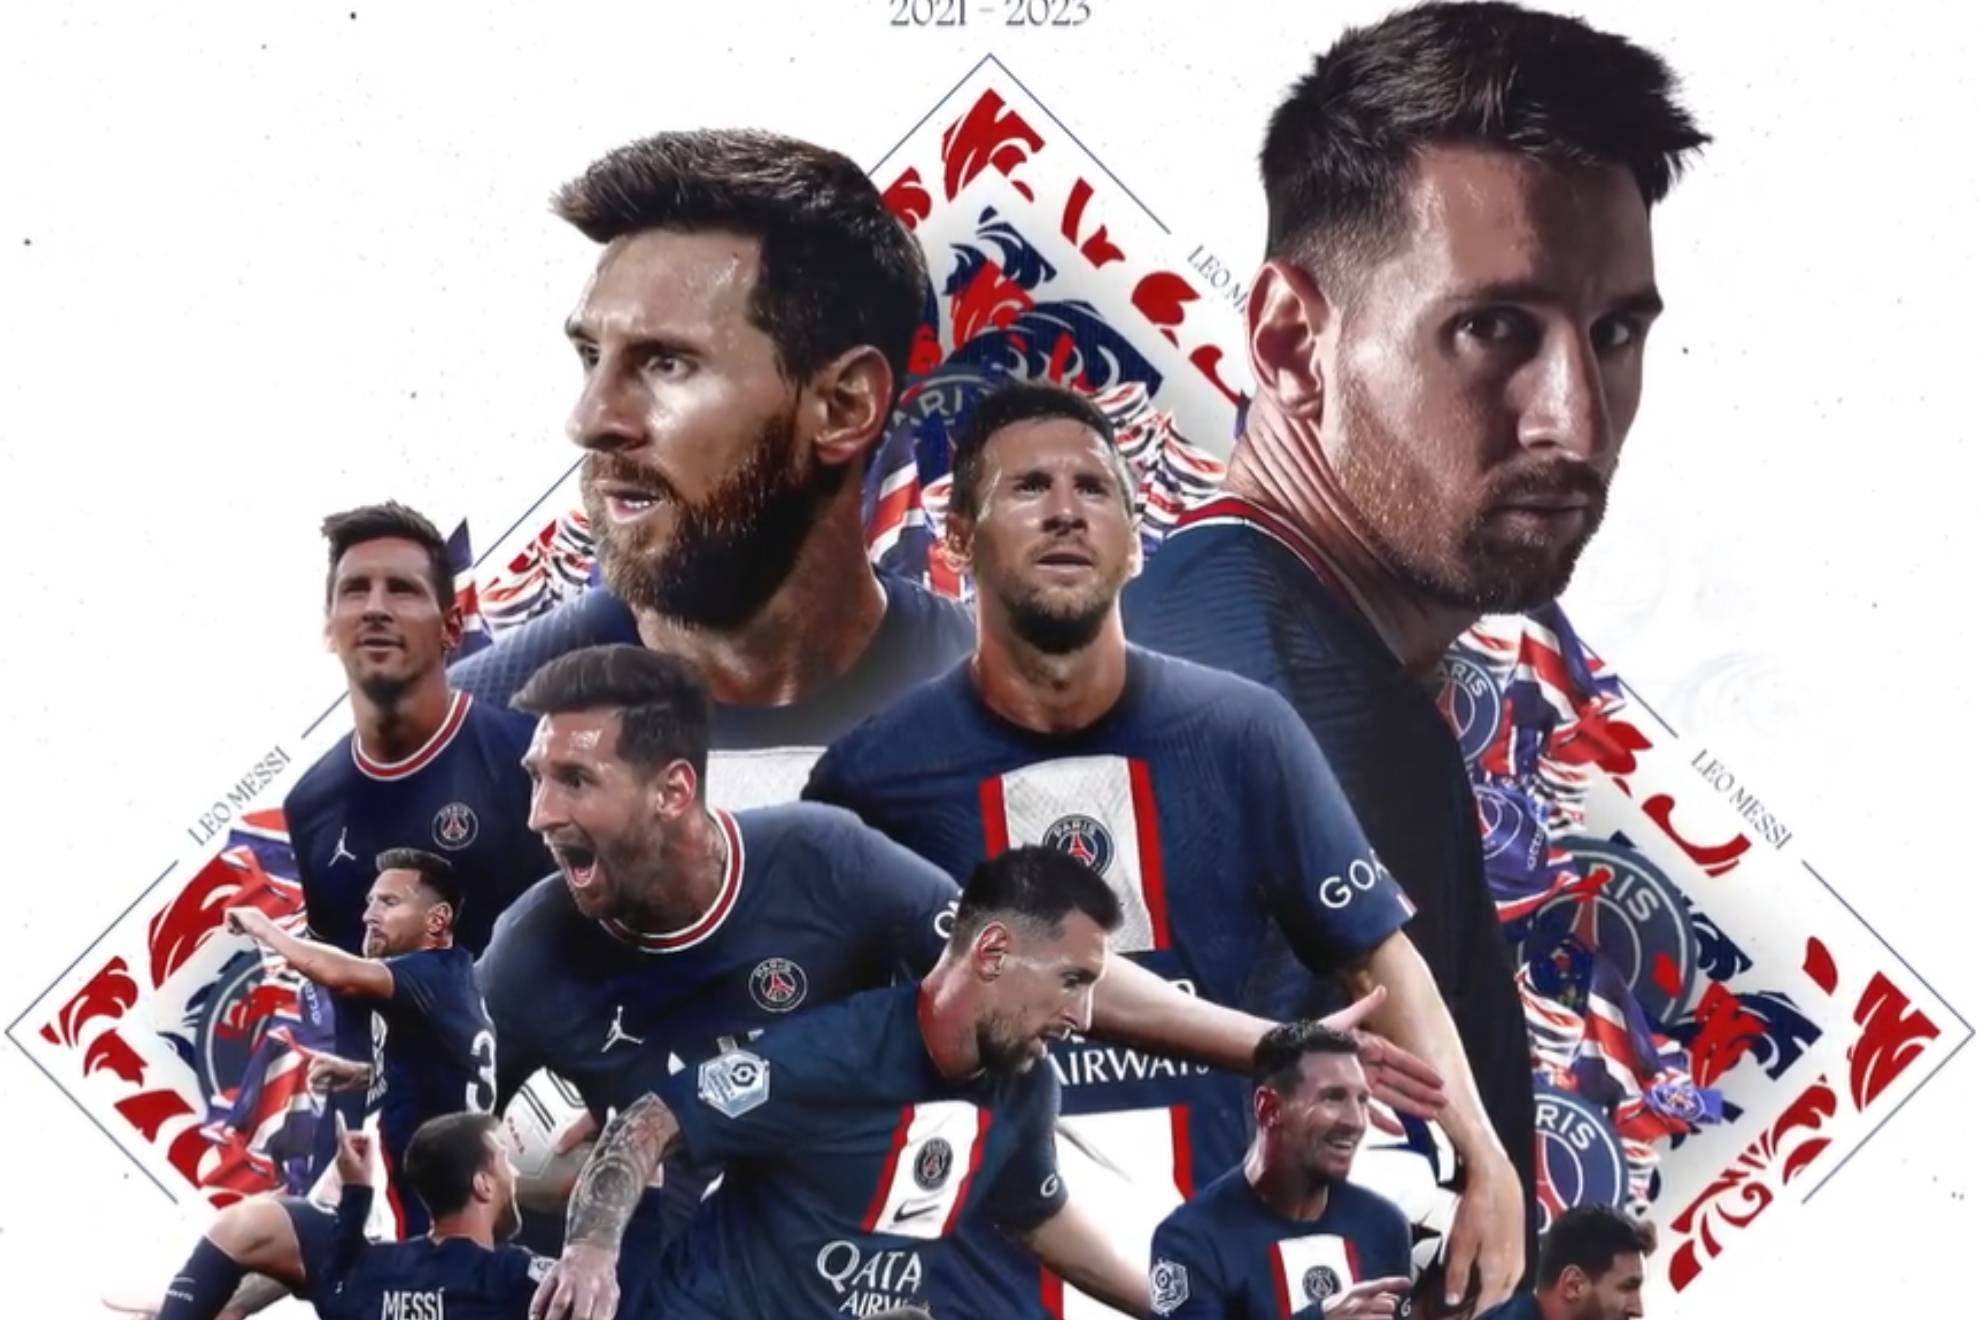 La historia llegó a su final: Paris Saint-Germain anuncia el adiós de Messi